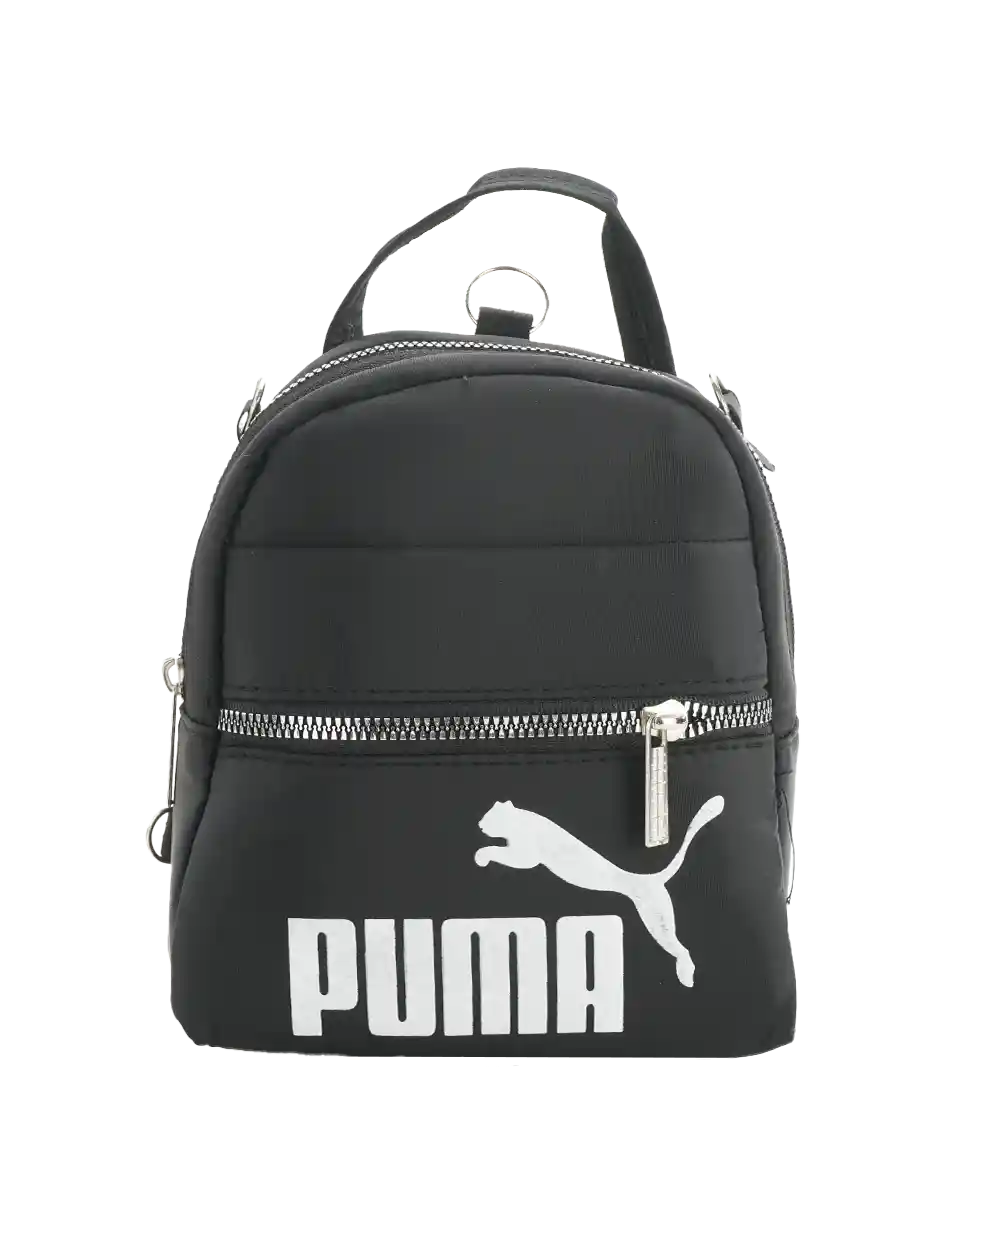 خرید کیف دوشی و کوله زنانه طرح پوما مدل 2045 و جنس برزنتی رنگ مشکی ،استفاده به صورت کوله پشتی و کیف دوشی به همراه ارسال رایگان و بهترین قیمت